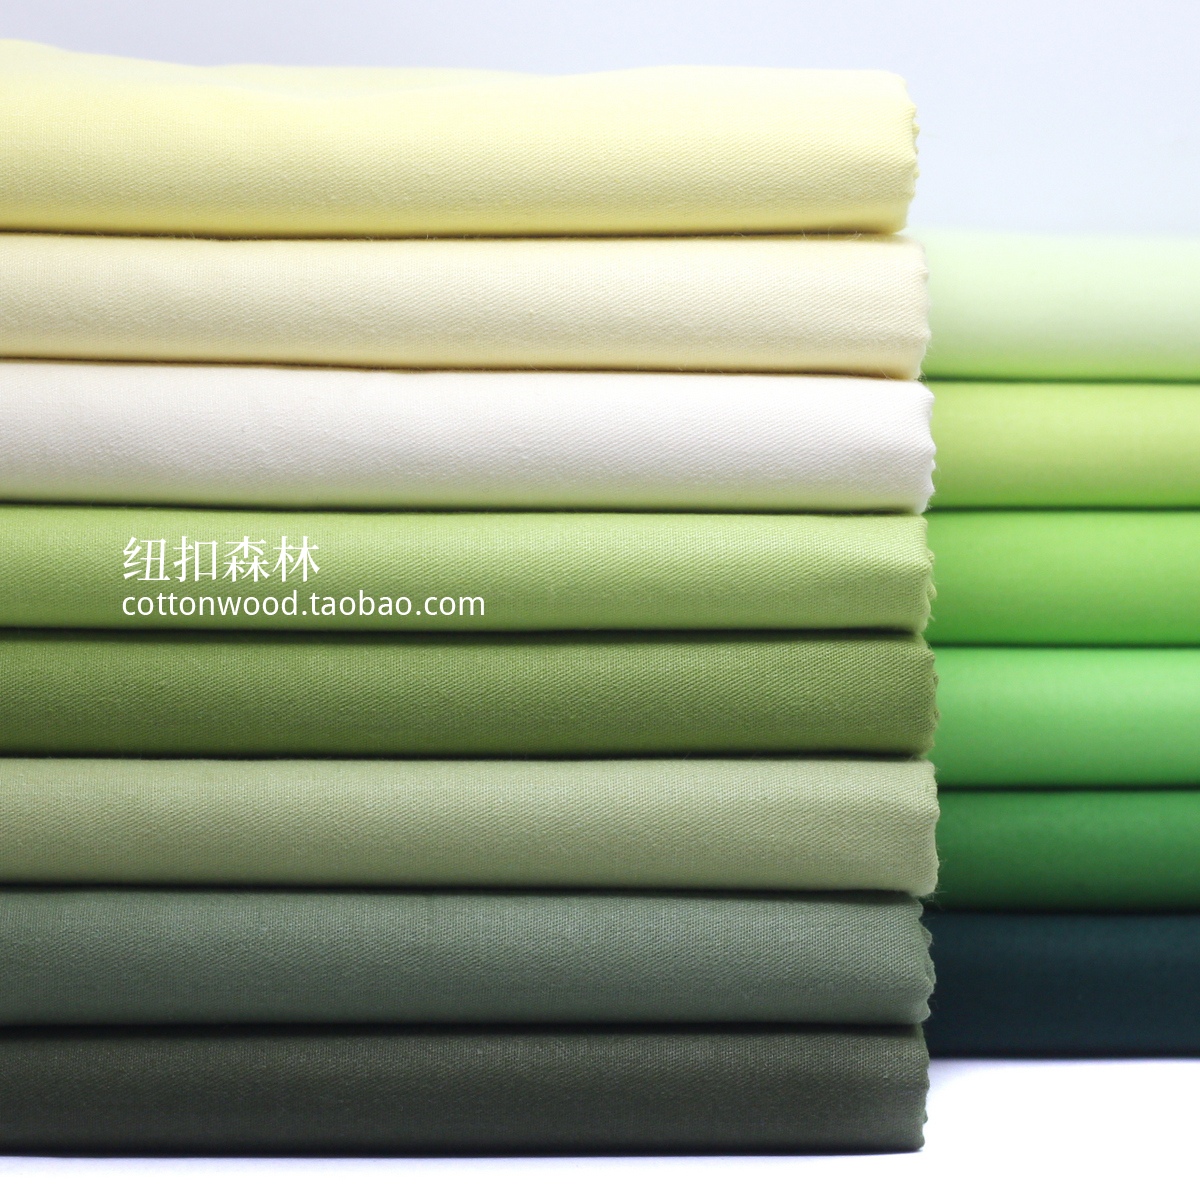 豆绿色系全棉斜纹布料 抹茶绿 军绿色纯棉衬衫面料 半米包邮